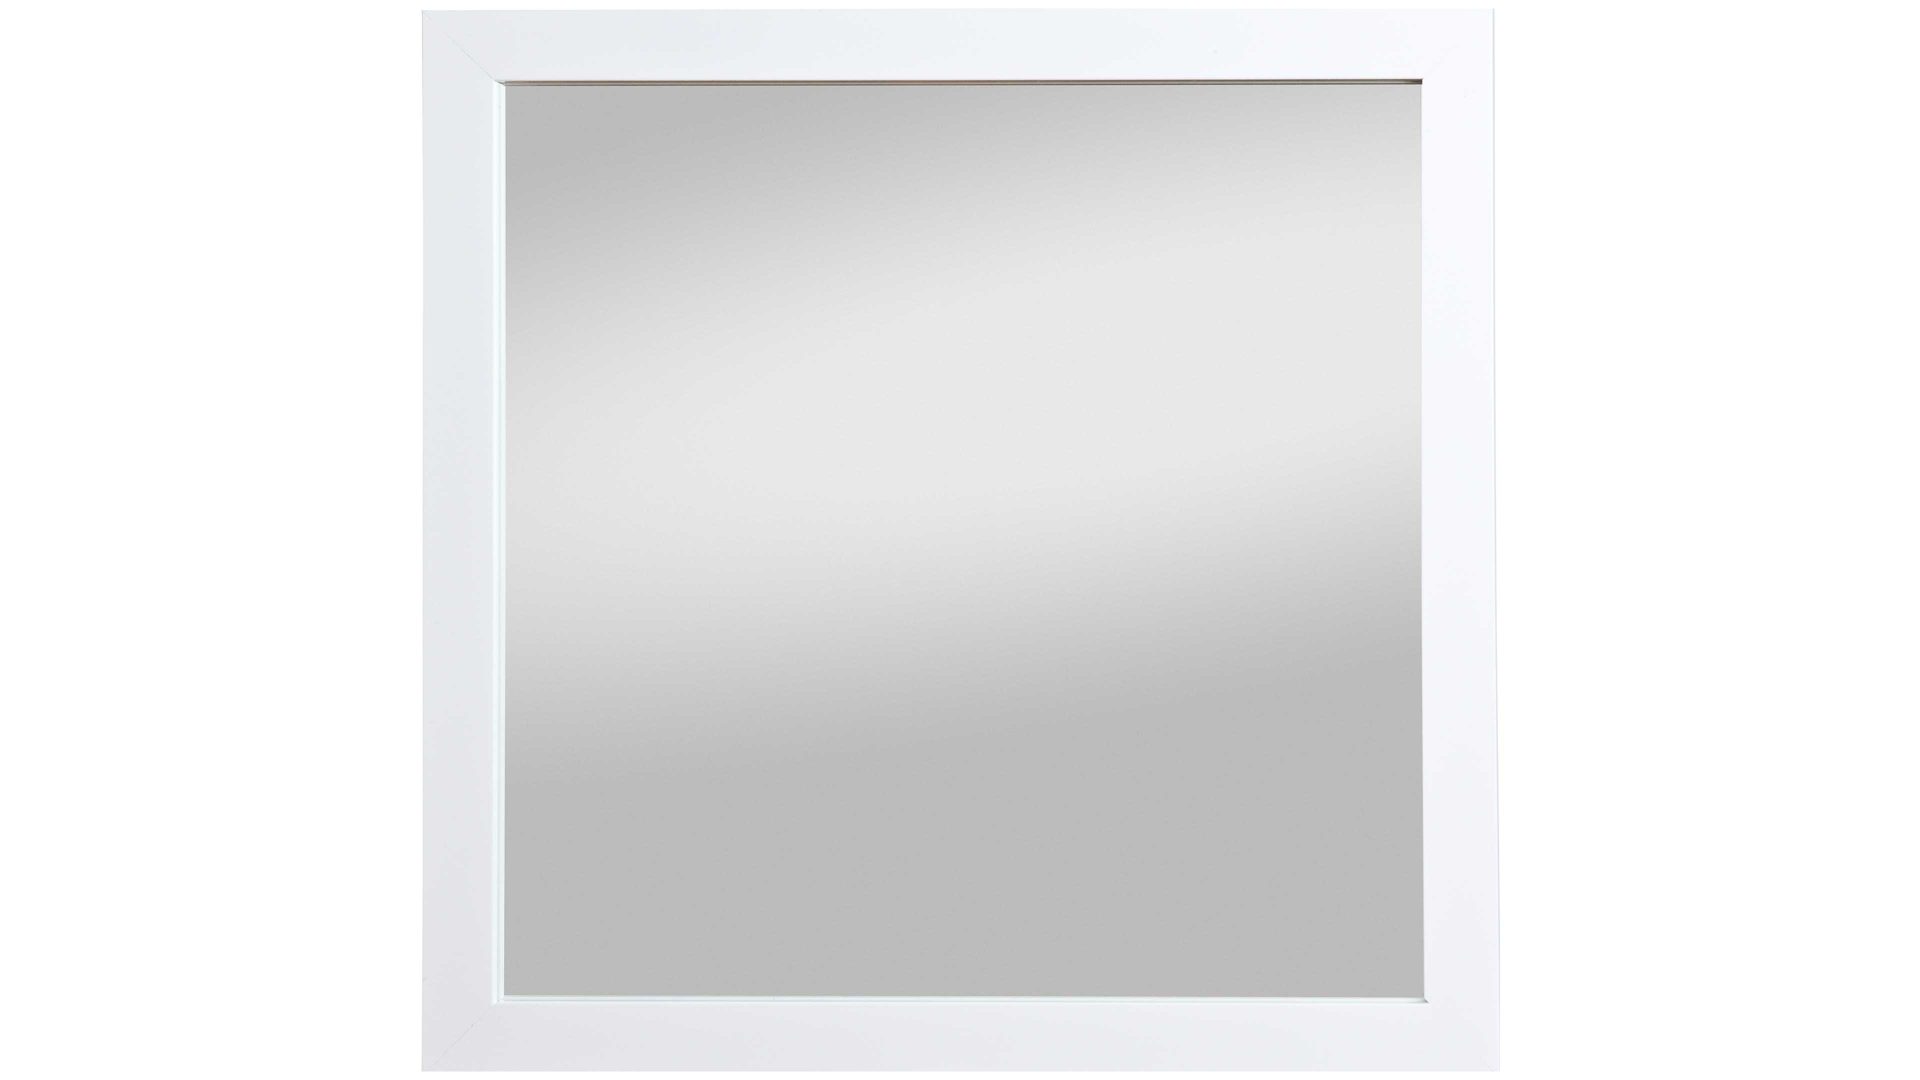 Wandspiegel Spiegelprofi aus Spiegel in Weiß Rahmenspiegel Kathi glänzender weißer Rahmen – ca. 45 x 45 cm